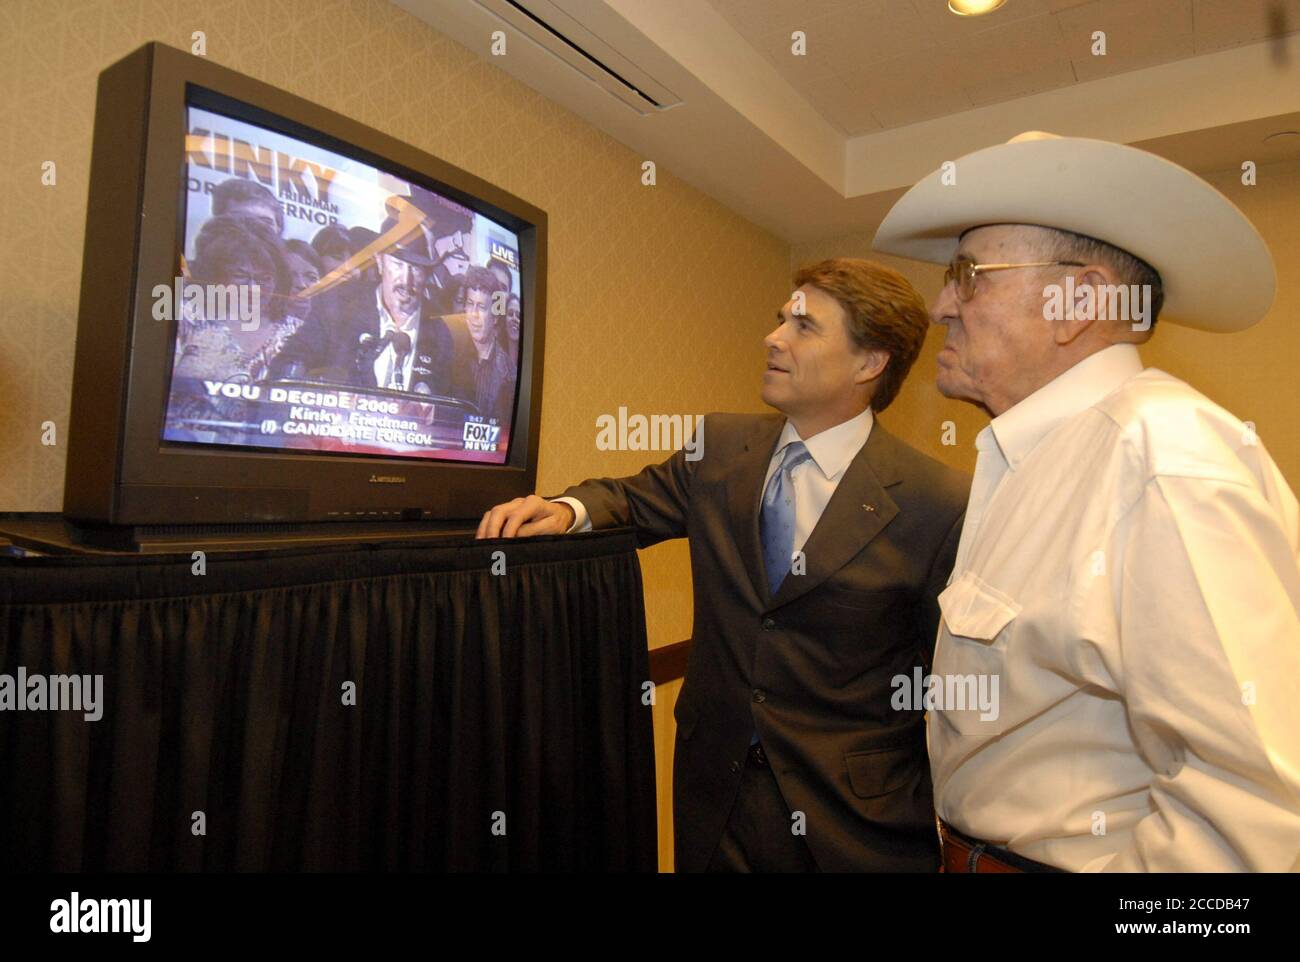 Austin, Texas 7. November 2006: Der Gouverneur von Texas, Rick Perry (l.), und sein Vater, Ray (r.), sehen dem Herausforderer Kinky Friedman zu, wie er dem Rennen des Gouverneurs um Perry im Fernsehen zugibt. ©Bob Daemmrich Stockfoto